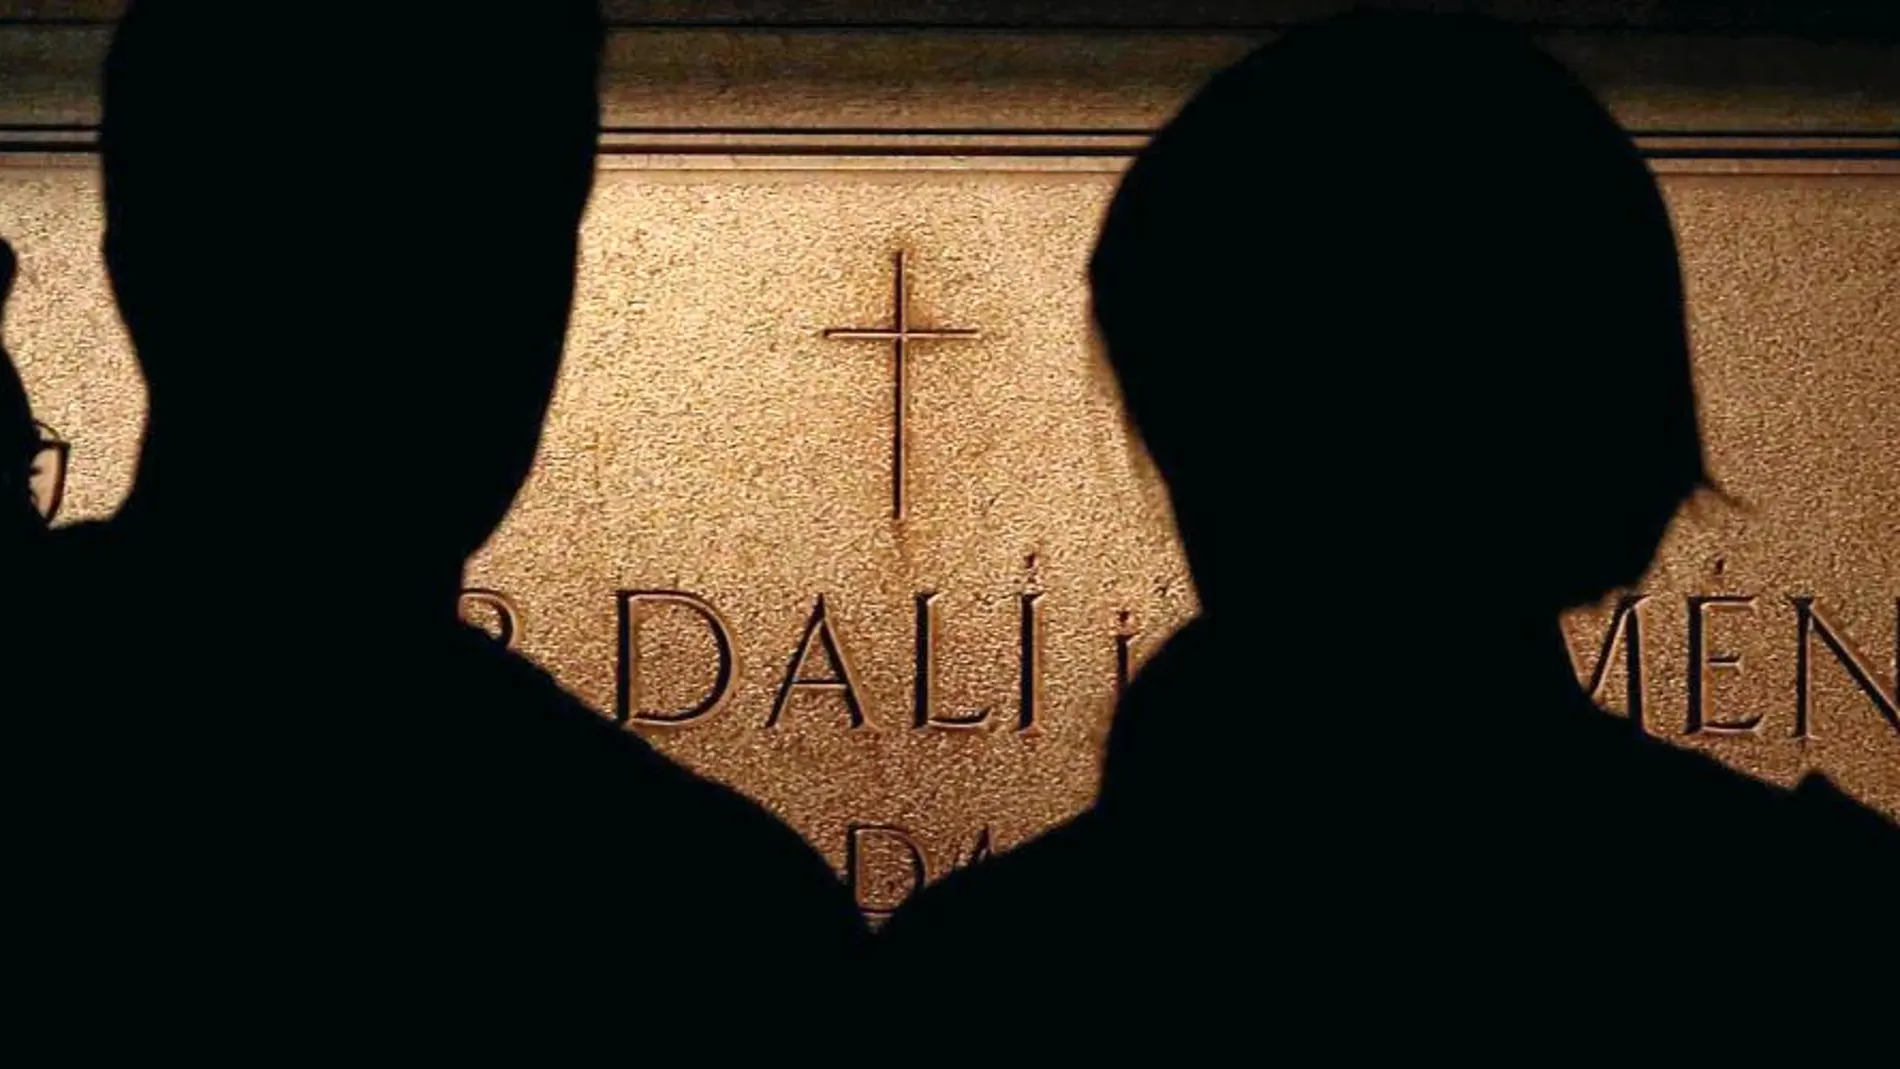 Visitantes al Teatro-Museo Dalí frente a la cripta del artista que esta noche abrirán para analizar el cadáver de Dalí